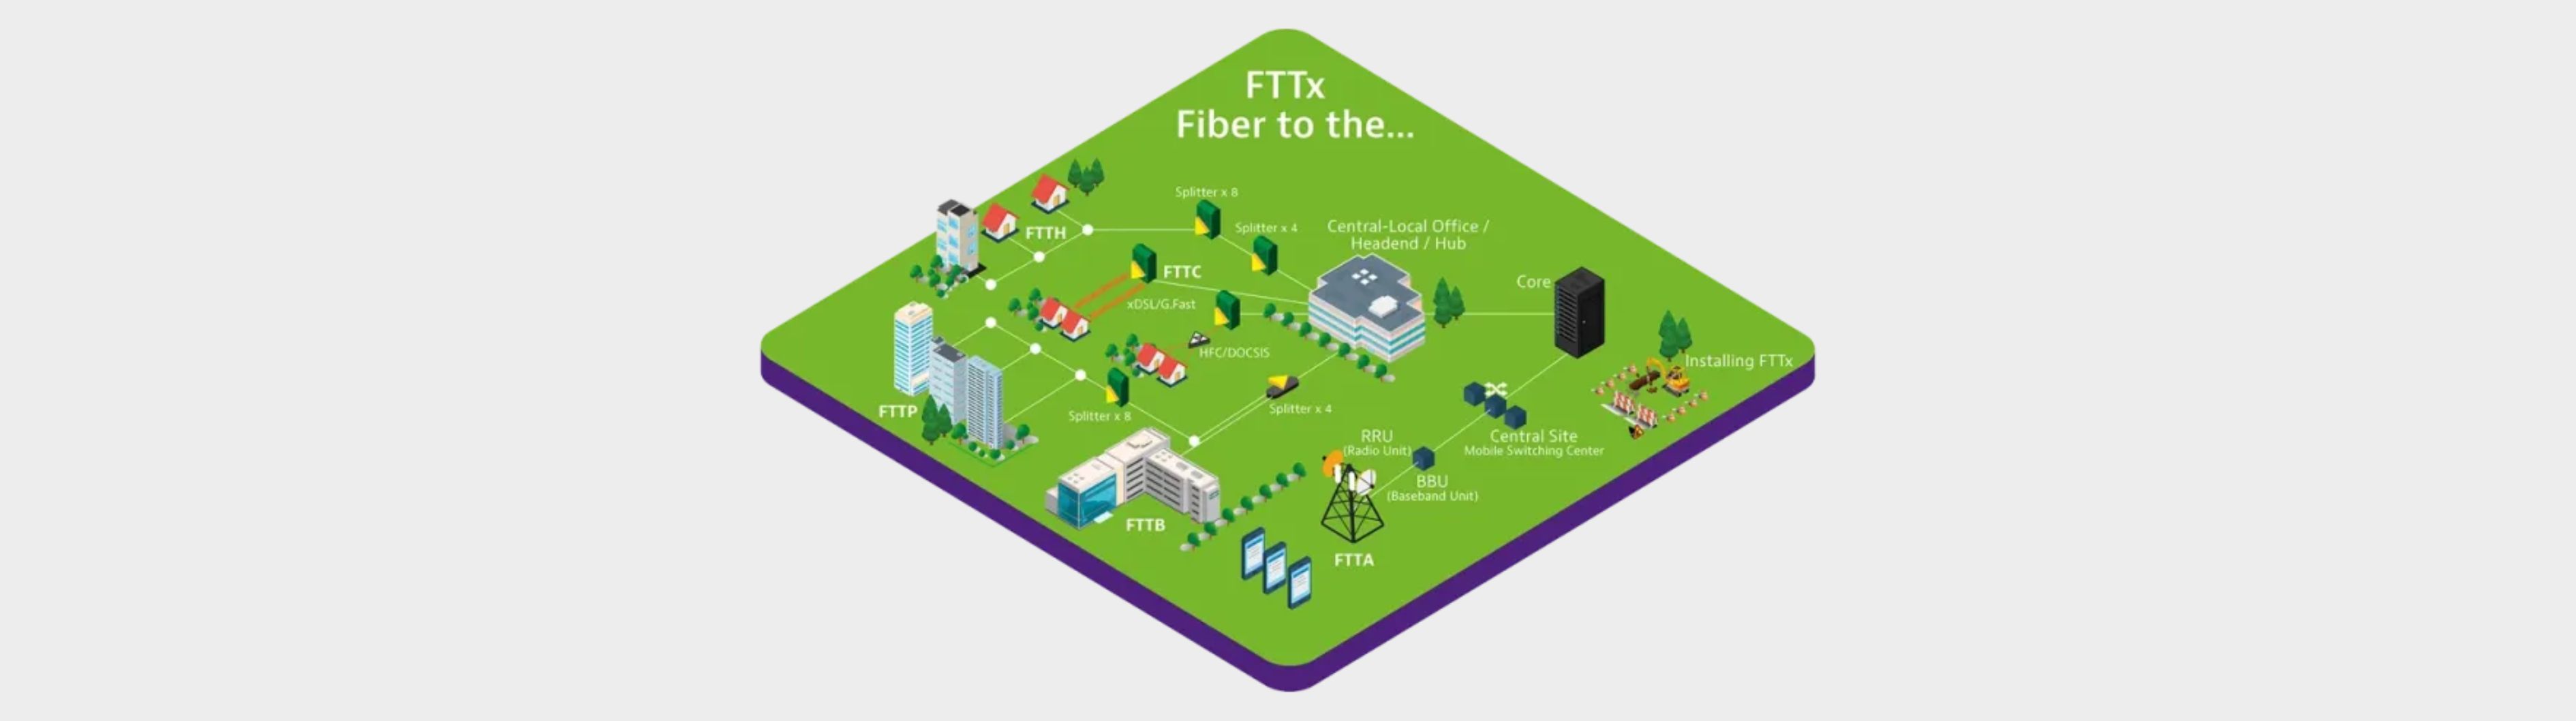 Conectividad FTTX